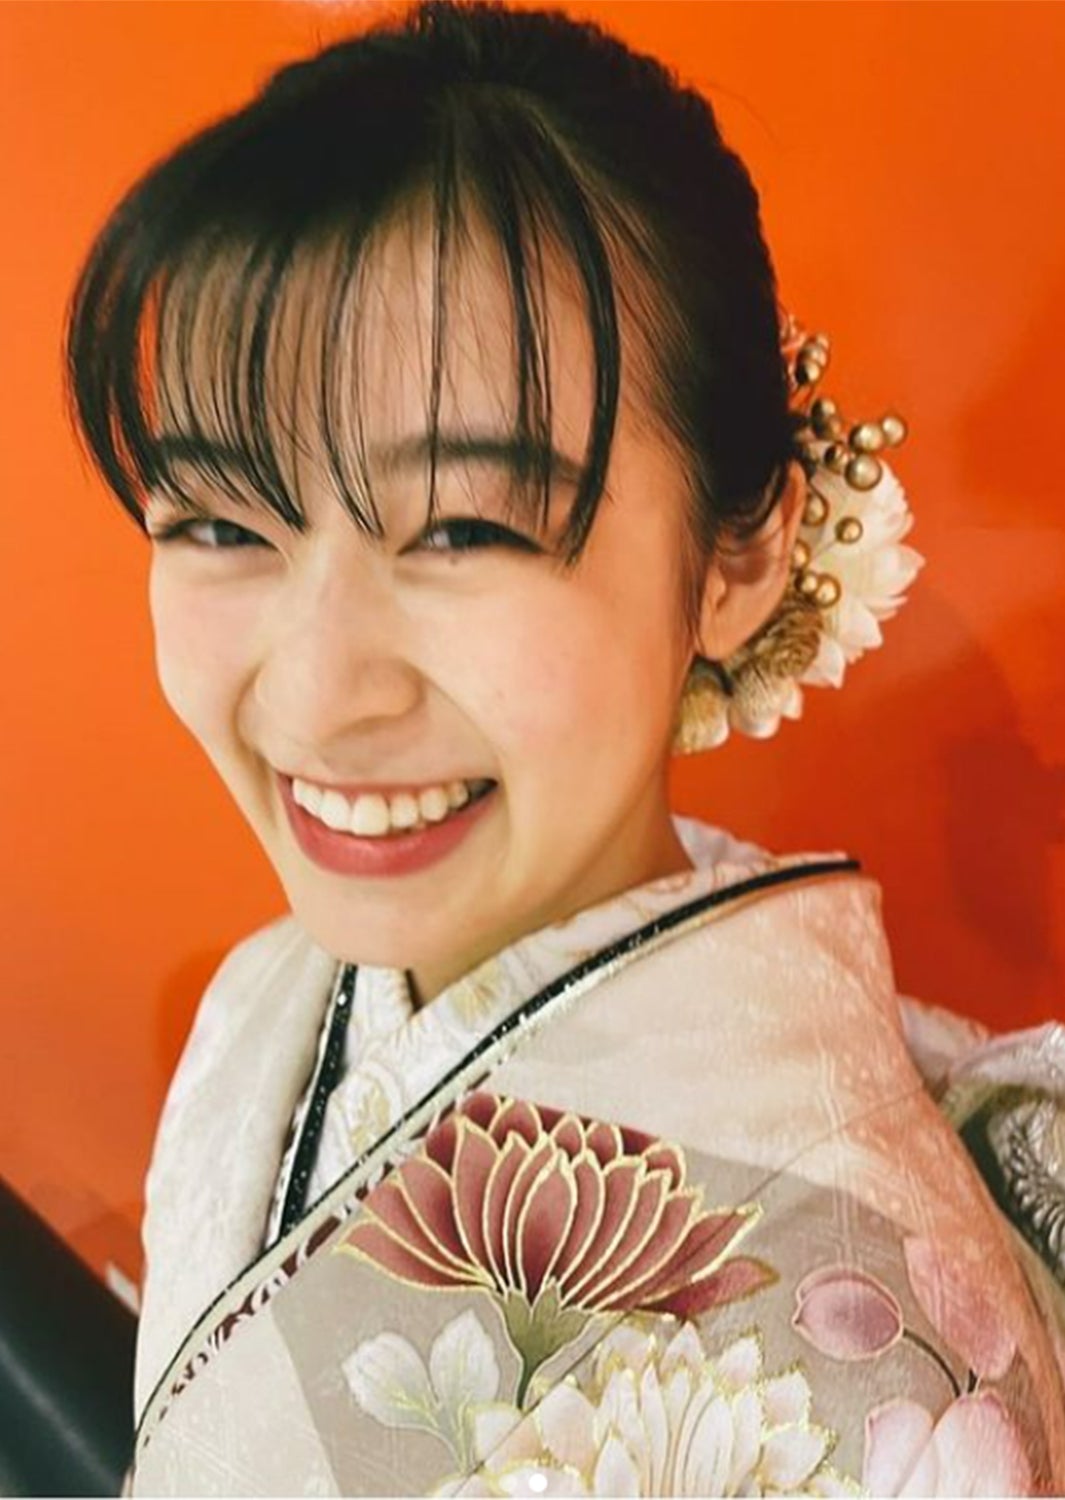 森七菜、新年初投稿で美しい振袖姿披露「可愛すぎる」「めちゃくちゃ似合ってる」と反響